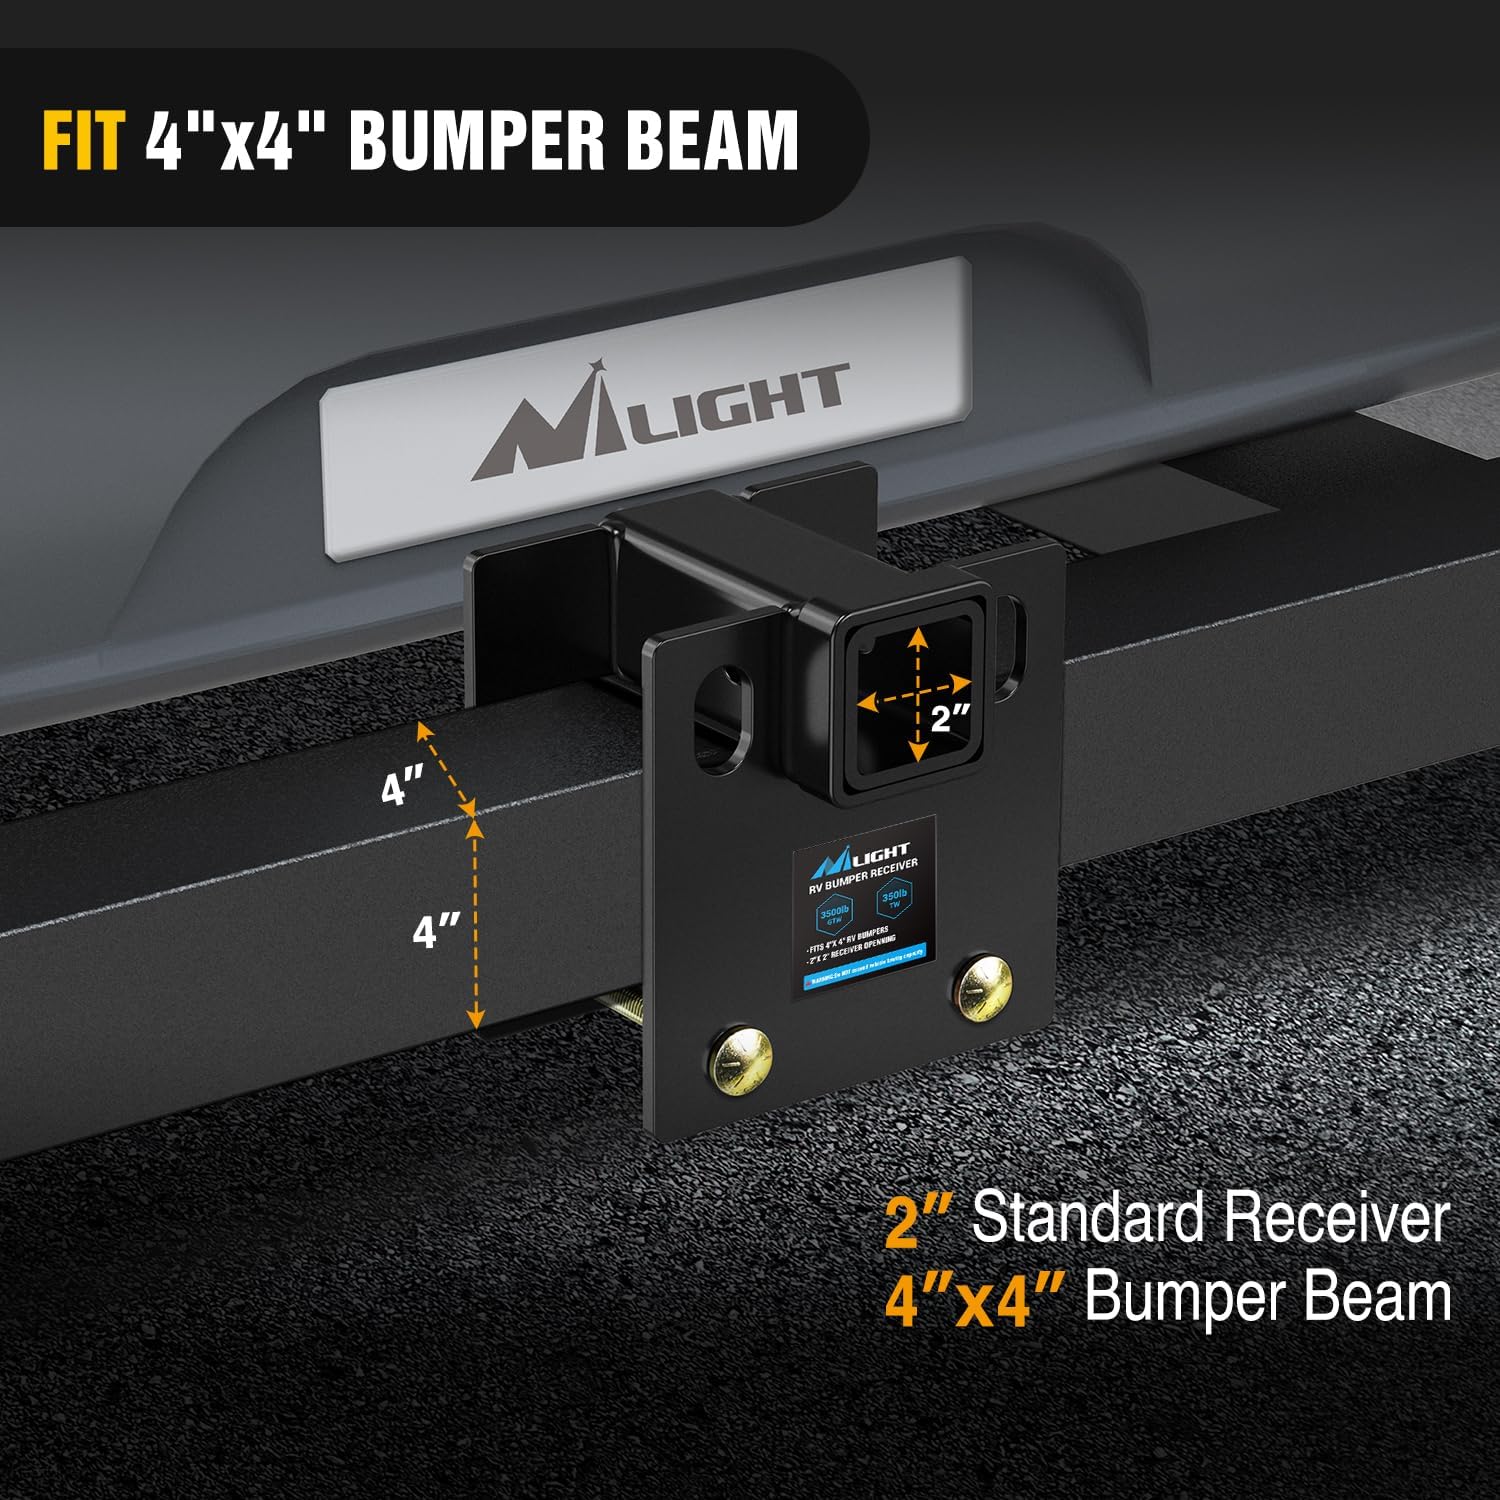 RV Bumper Hitch Receiver Fits 4" x 4" Square RV Rear Bumpers Nilight